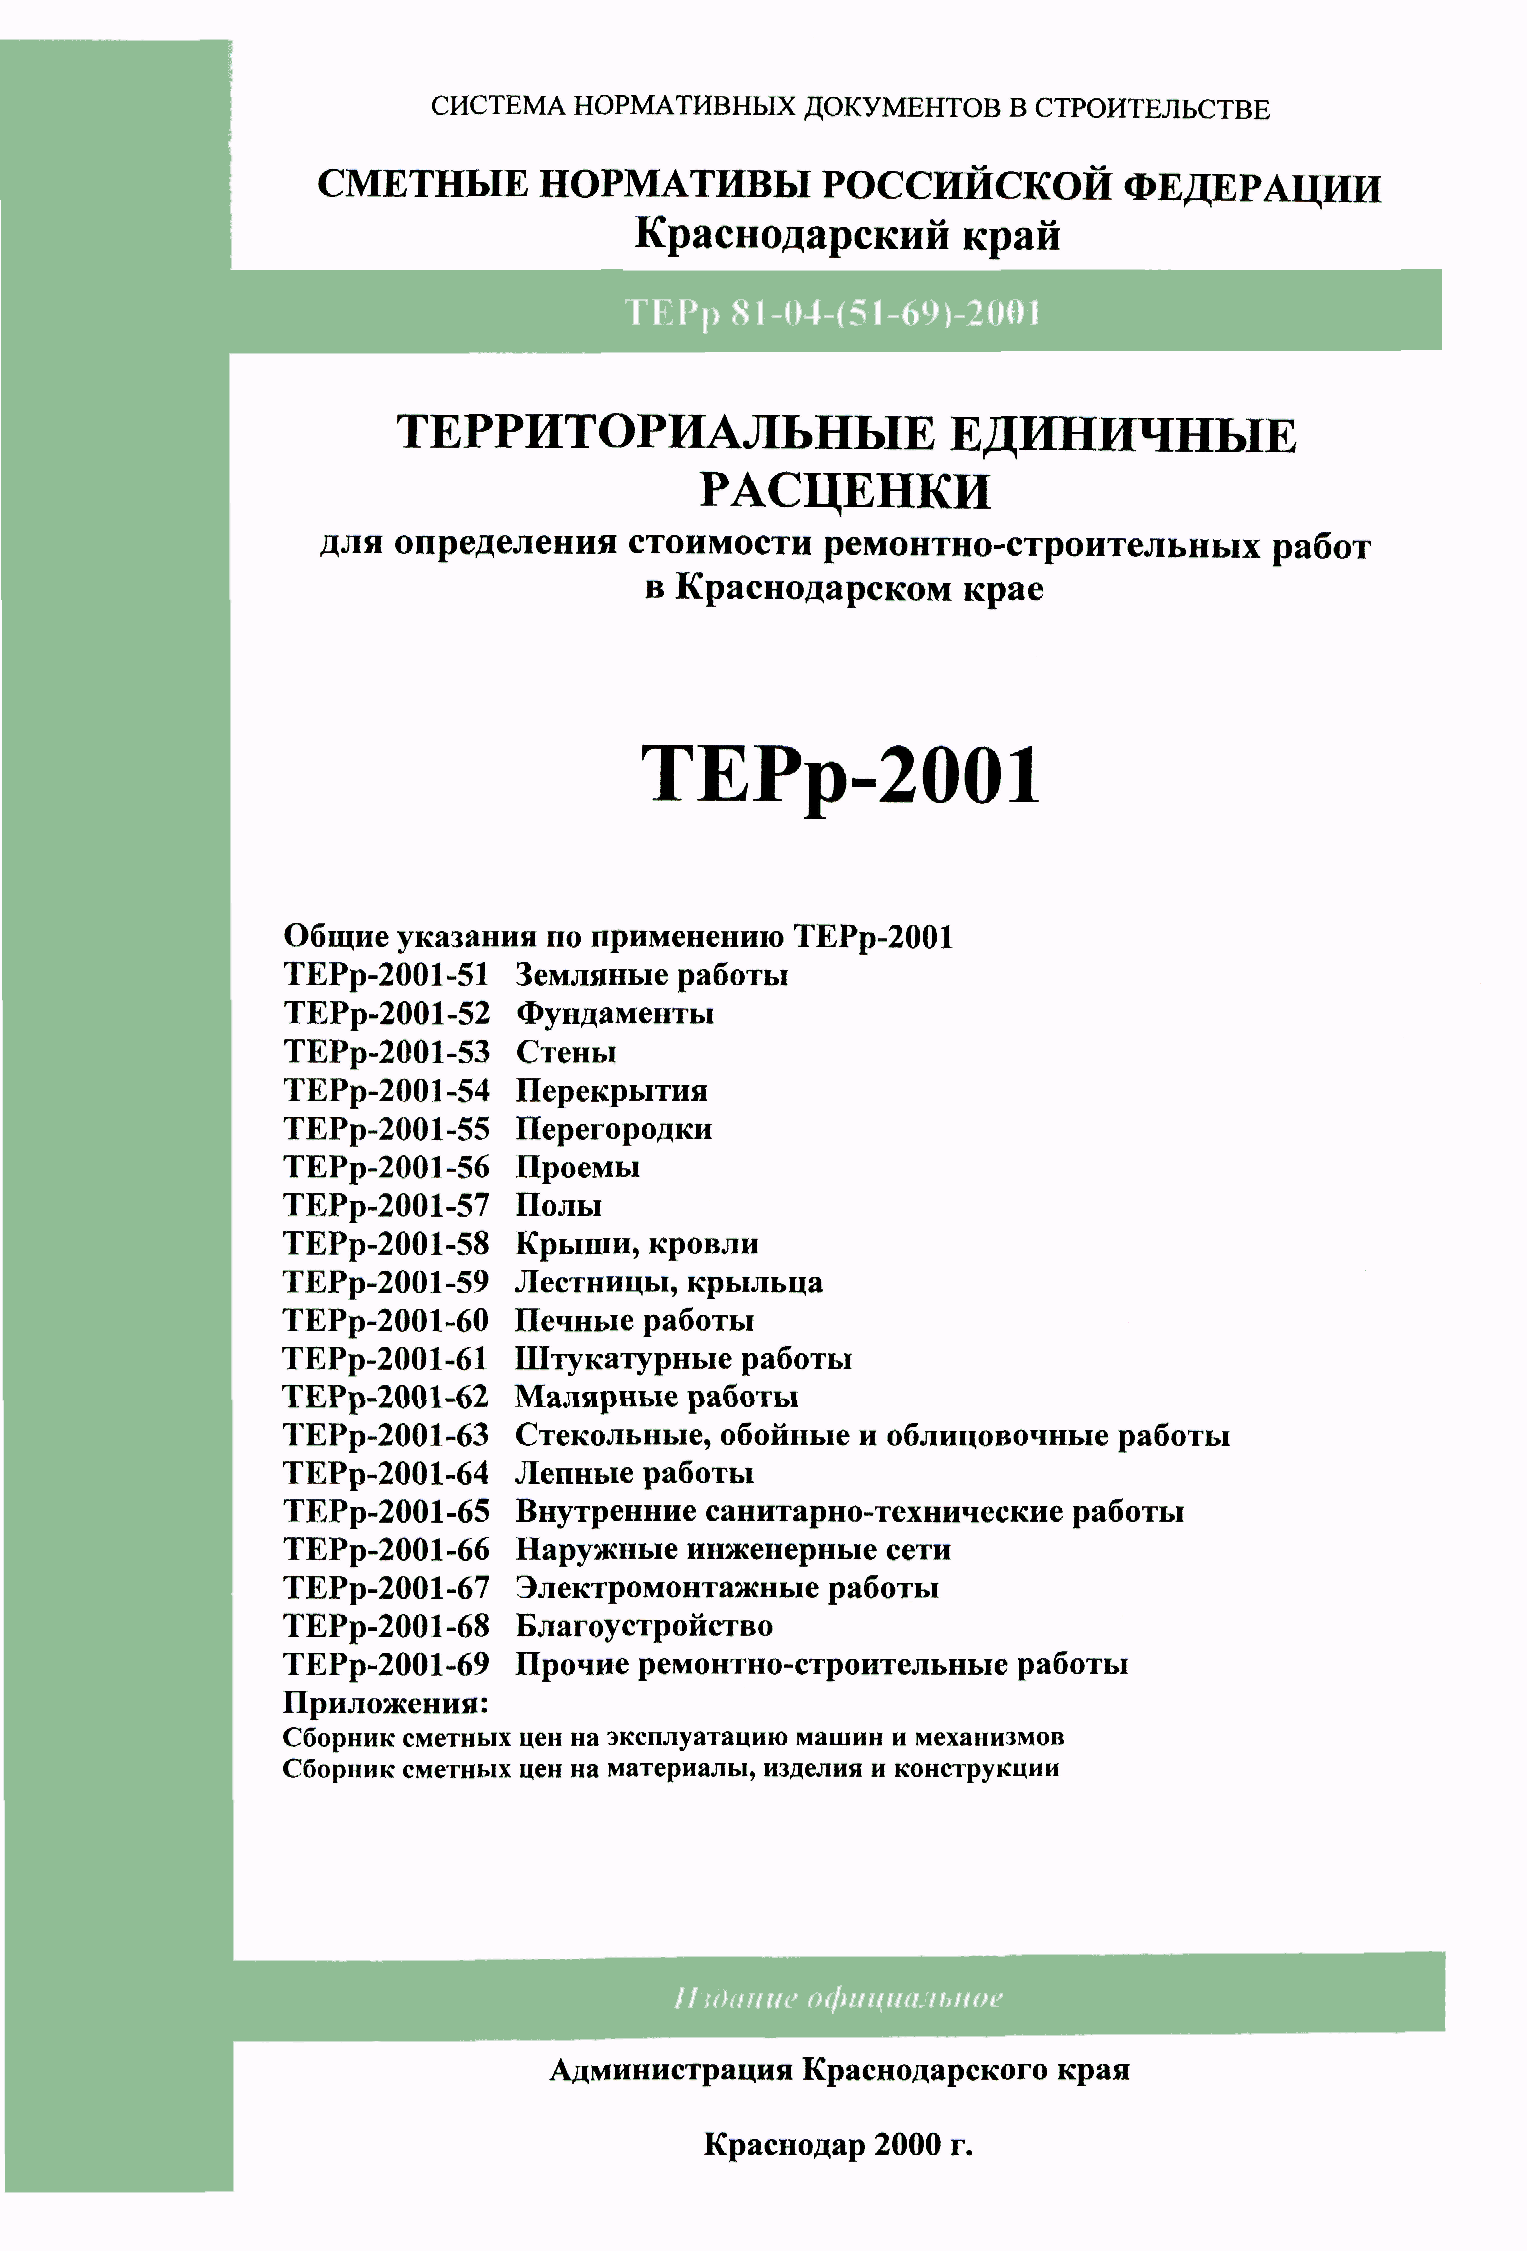 ТЕРр Краснодарского края 2001-65